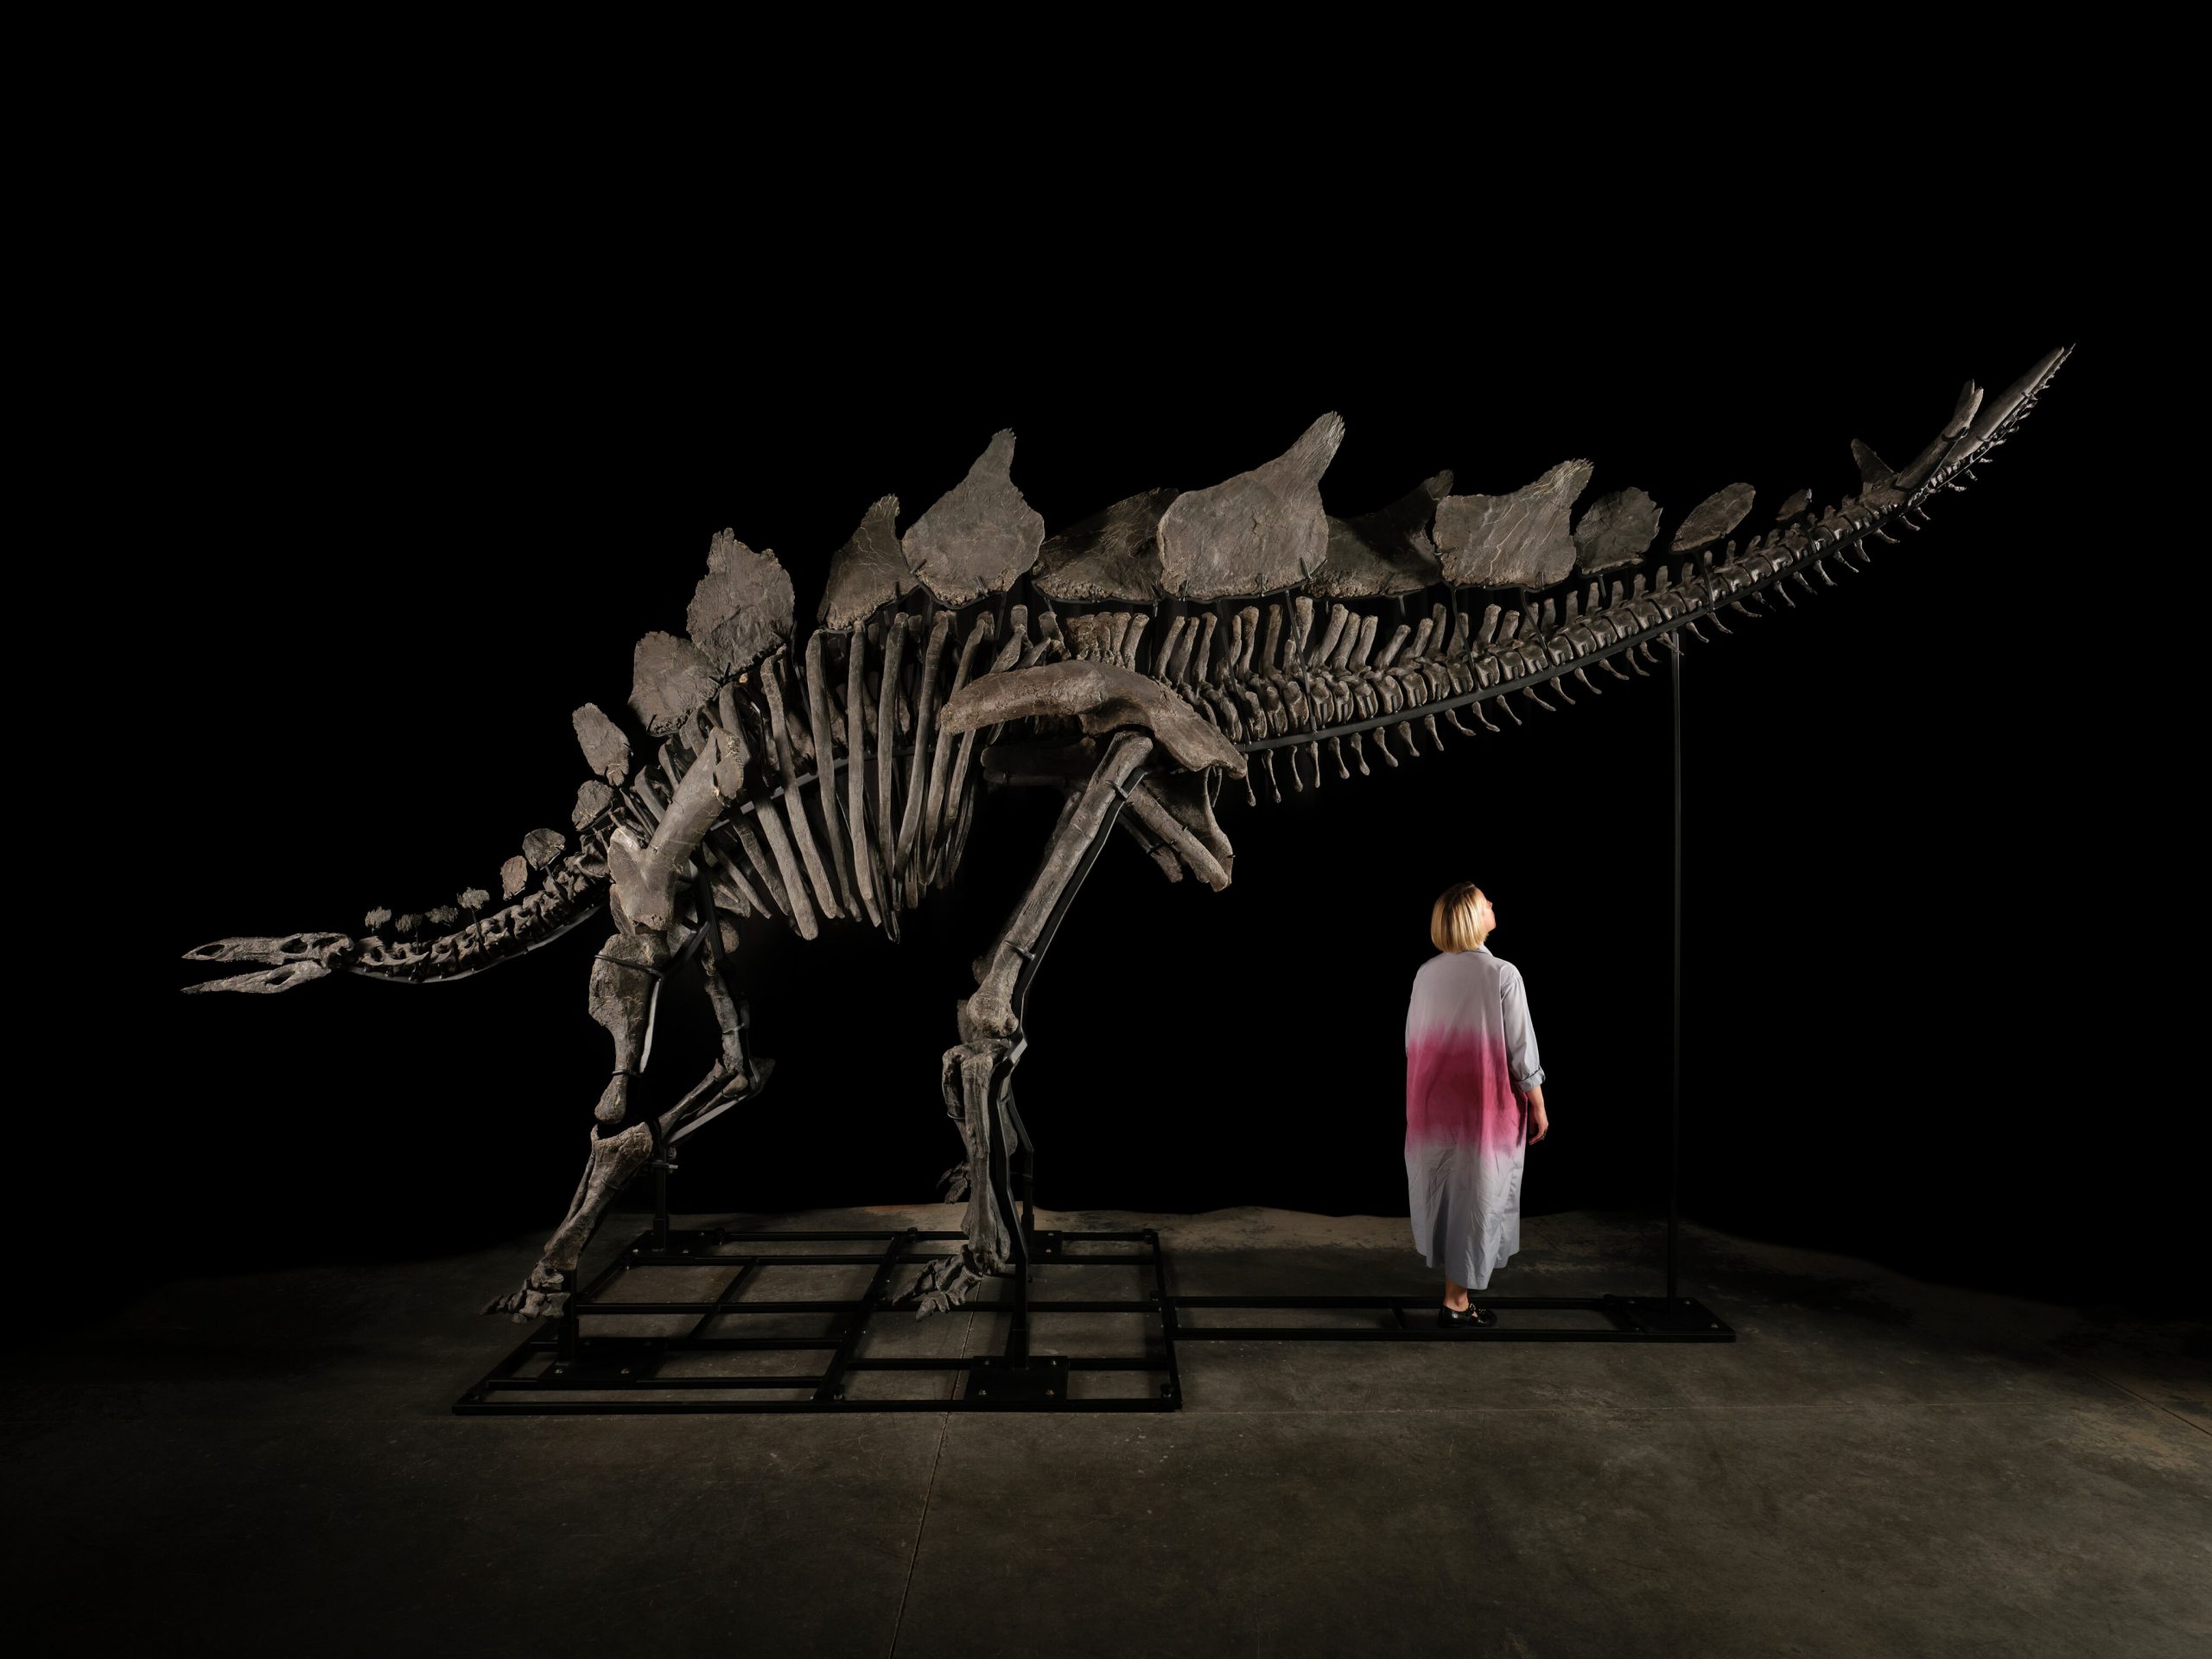 161 Millionen Jahre altes, fast vollständiges Stegosaurus-Skelett wird am Mittwoch in New York versteigert